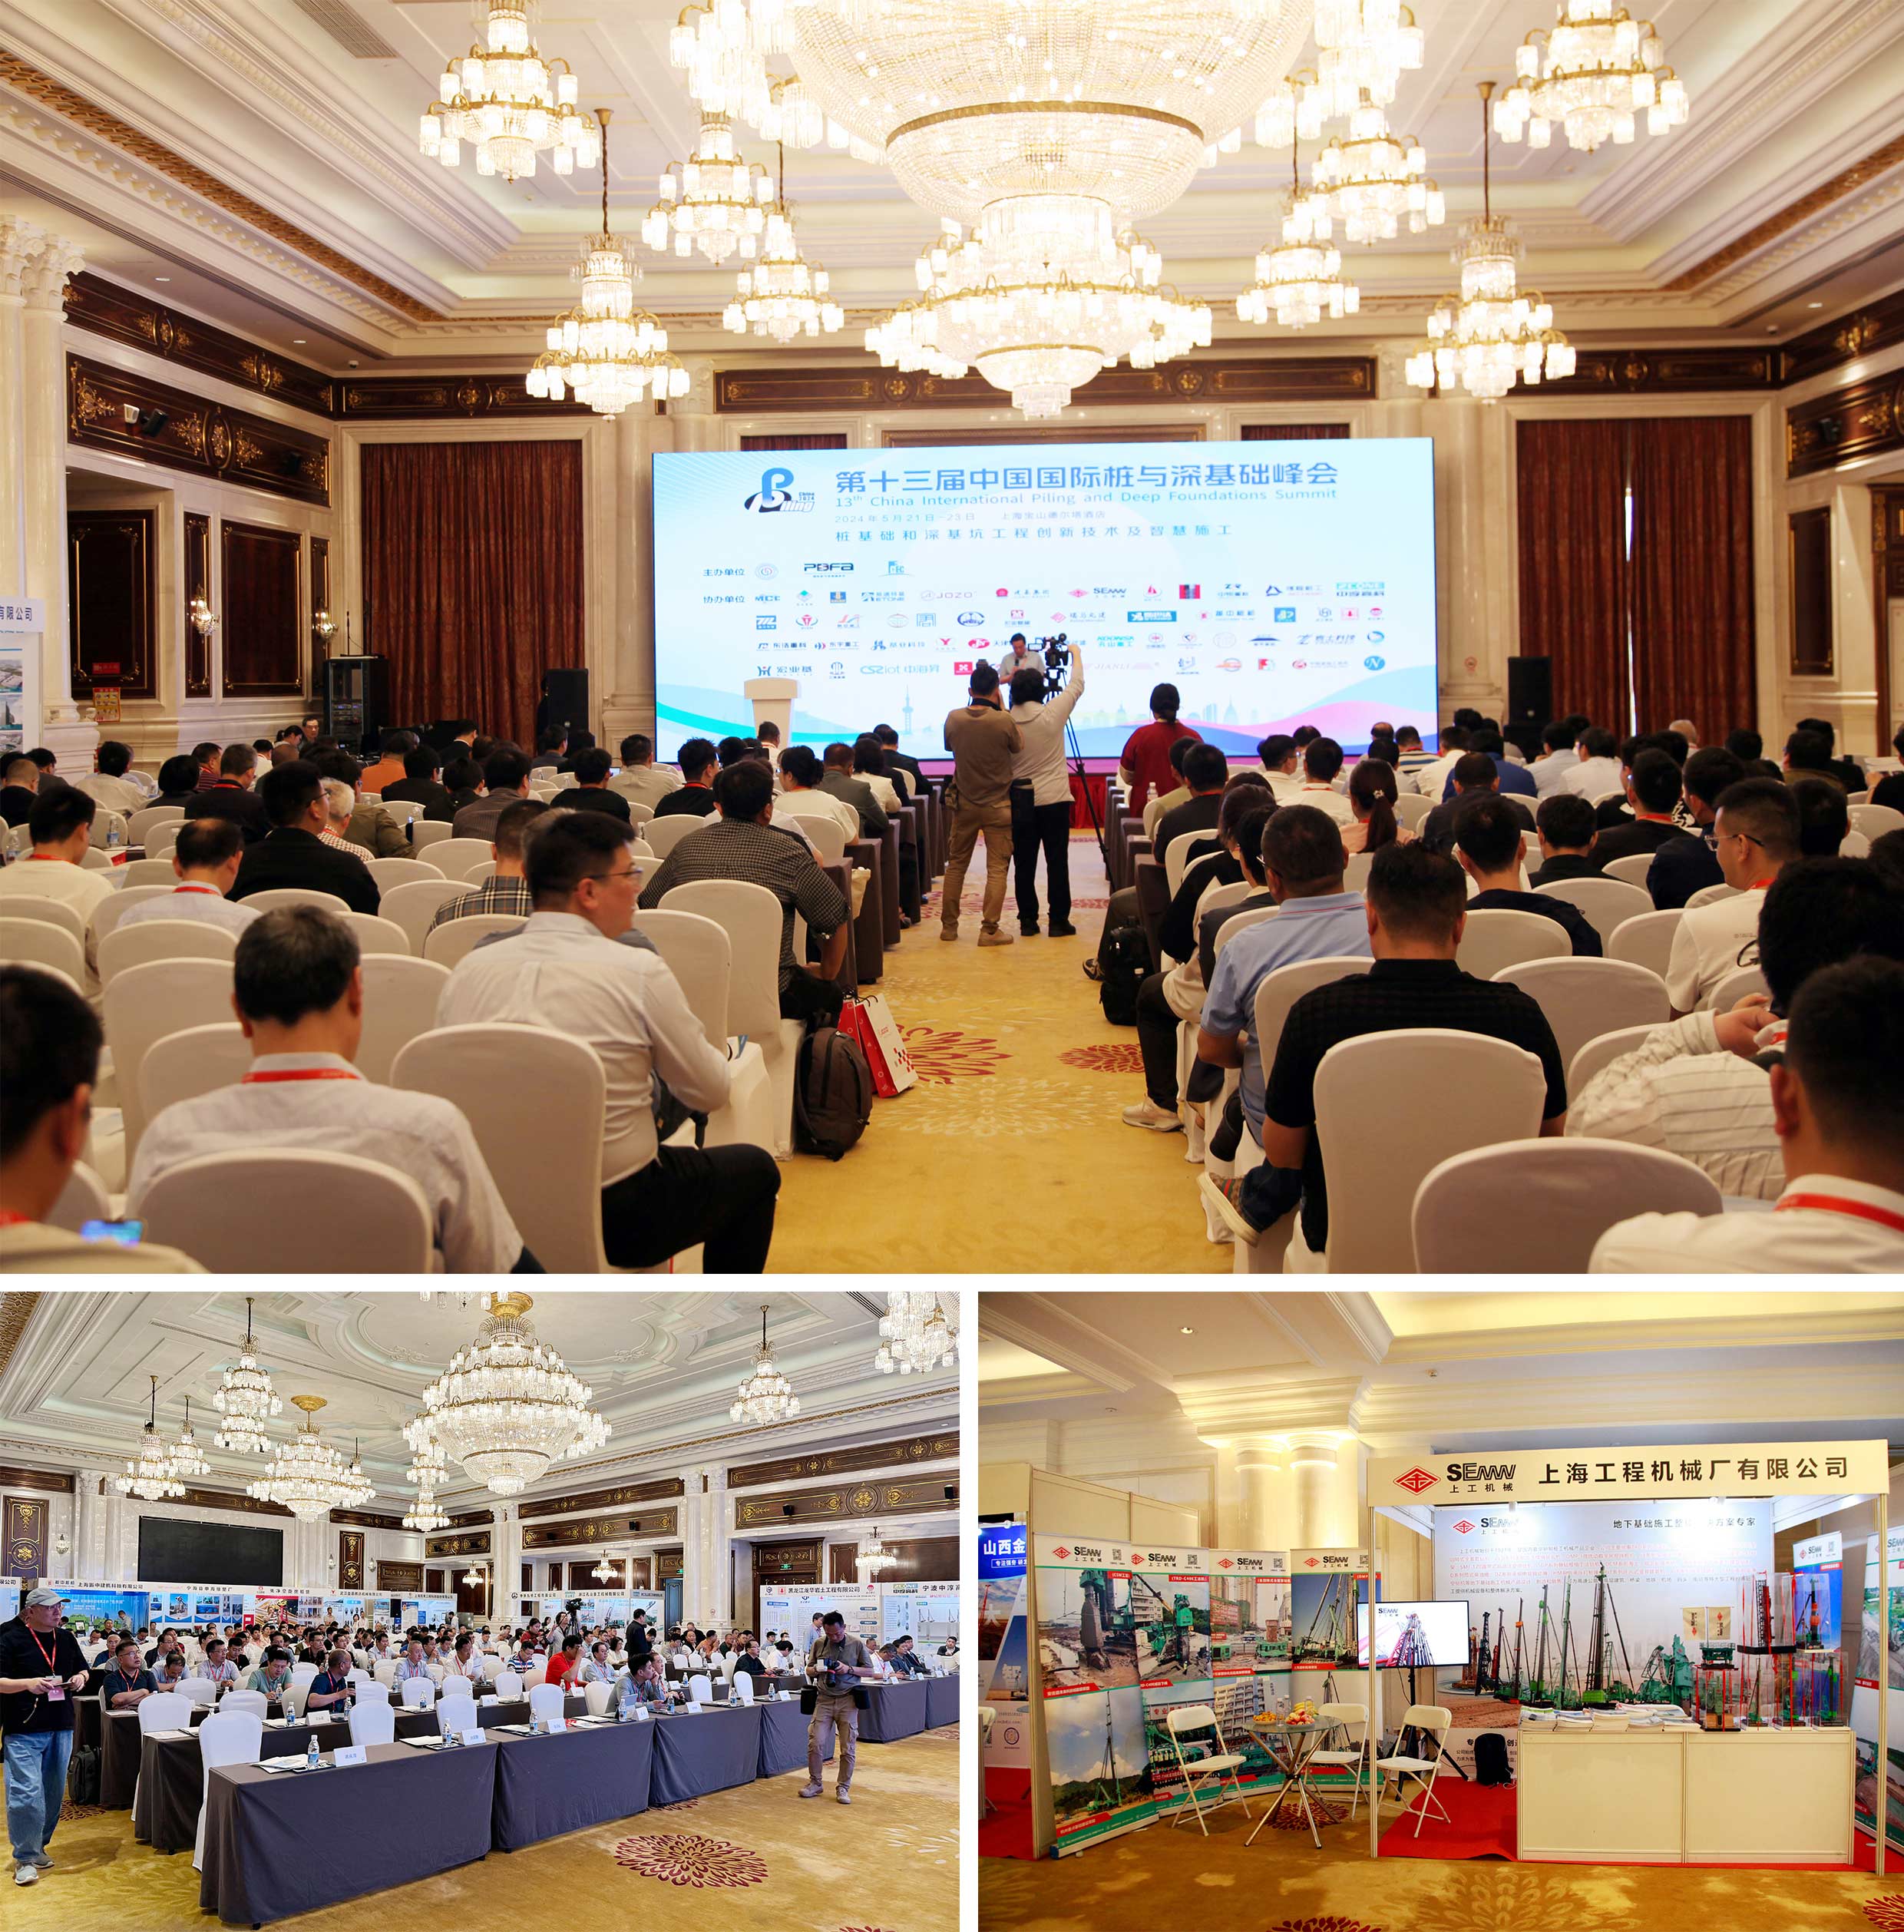 ¡SEMW llevó su tecnología de construcción de pilotes de grava a la 13ª Cumbre Internacional de Pilotes y Cimentaciones Profundas de China!